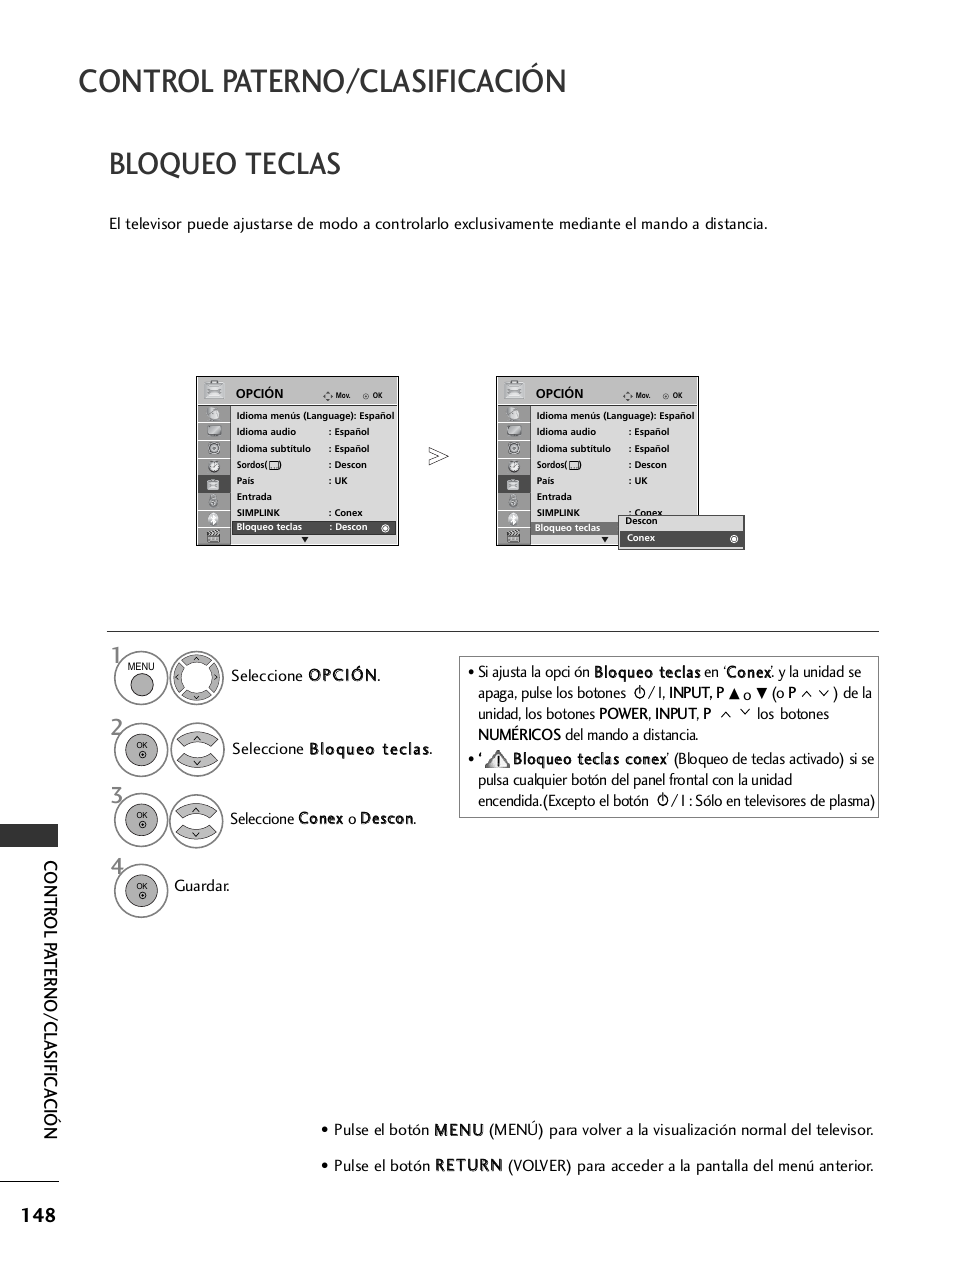 Bloqueo teclas, Control paterno/clasificación, Contr ol p aterno/clasifica ción | LG 32LH40 Manual del usuario | Página 150 / 180